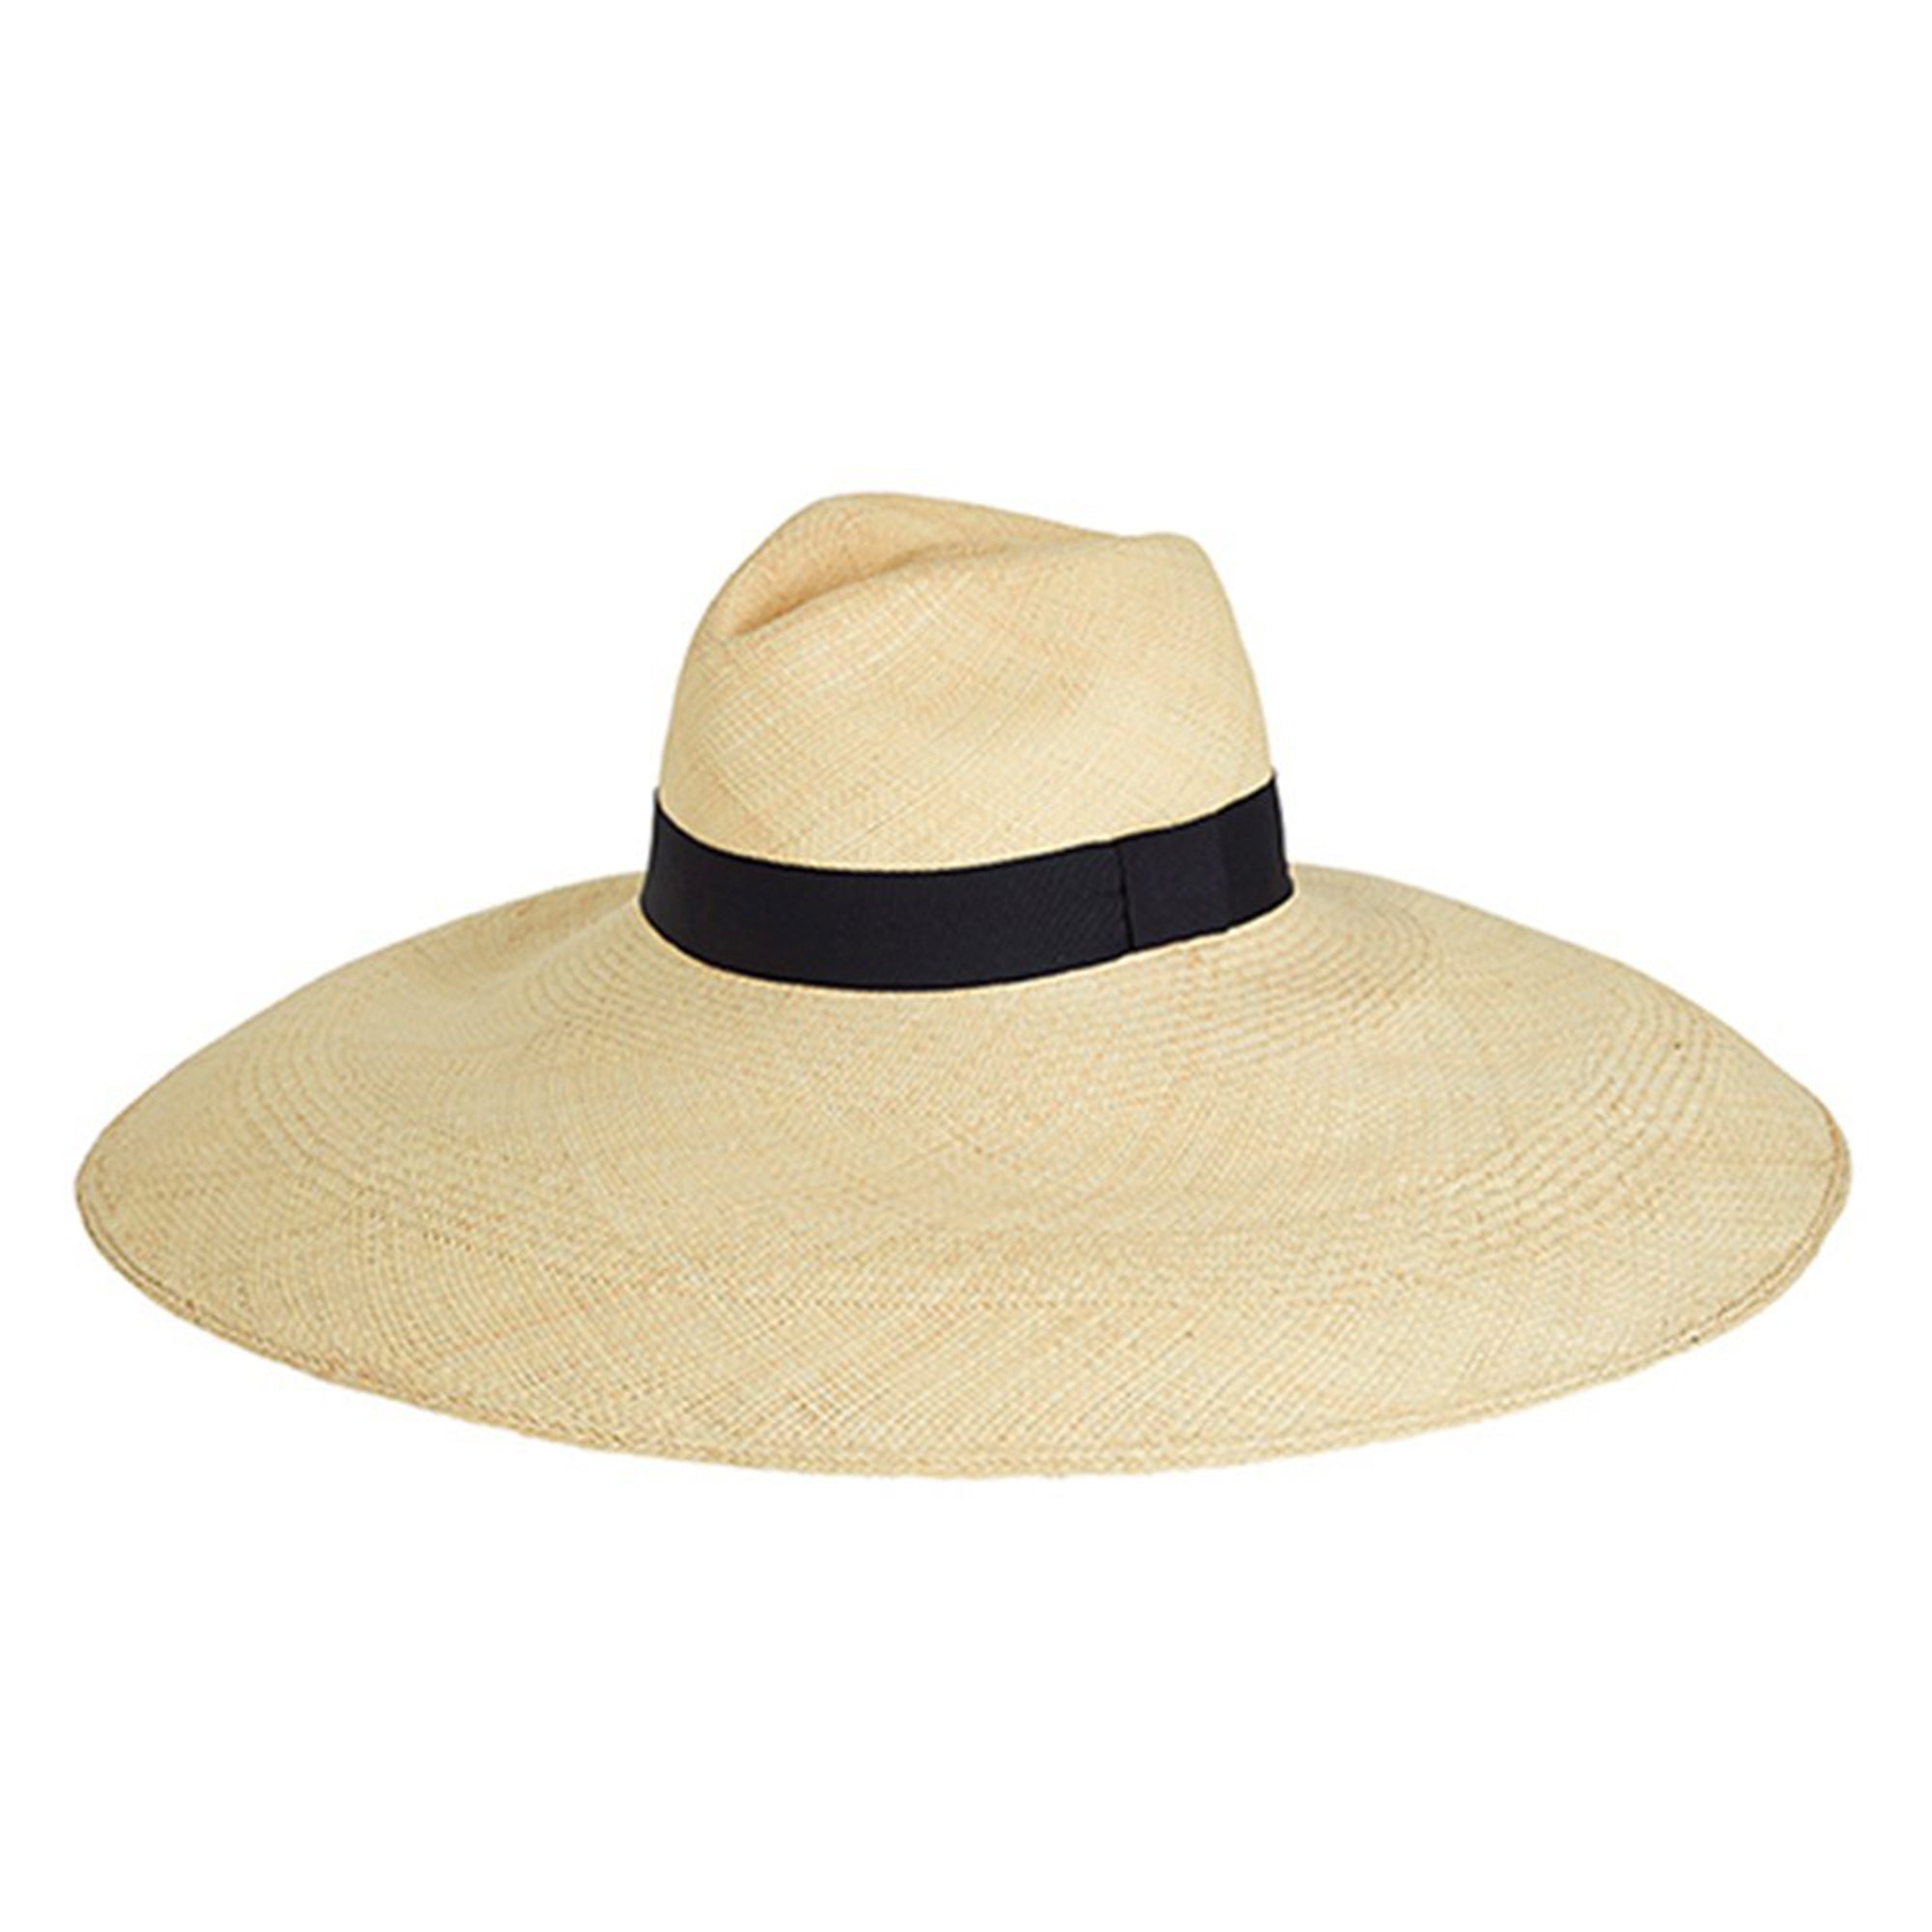 Panama Hats – Sarah J Curtis